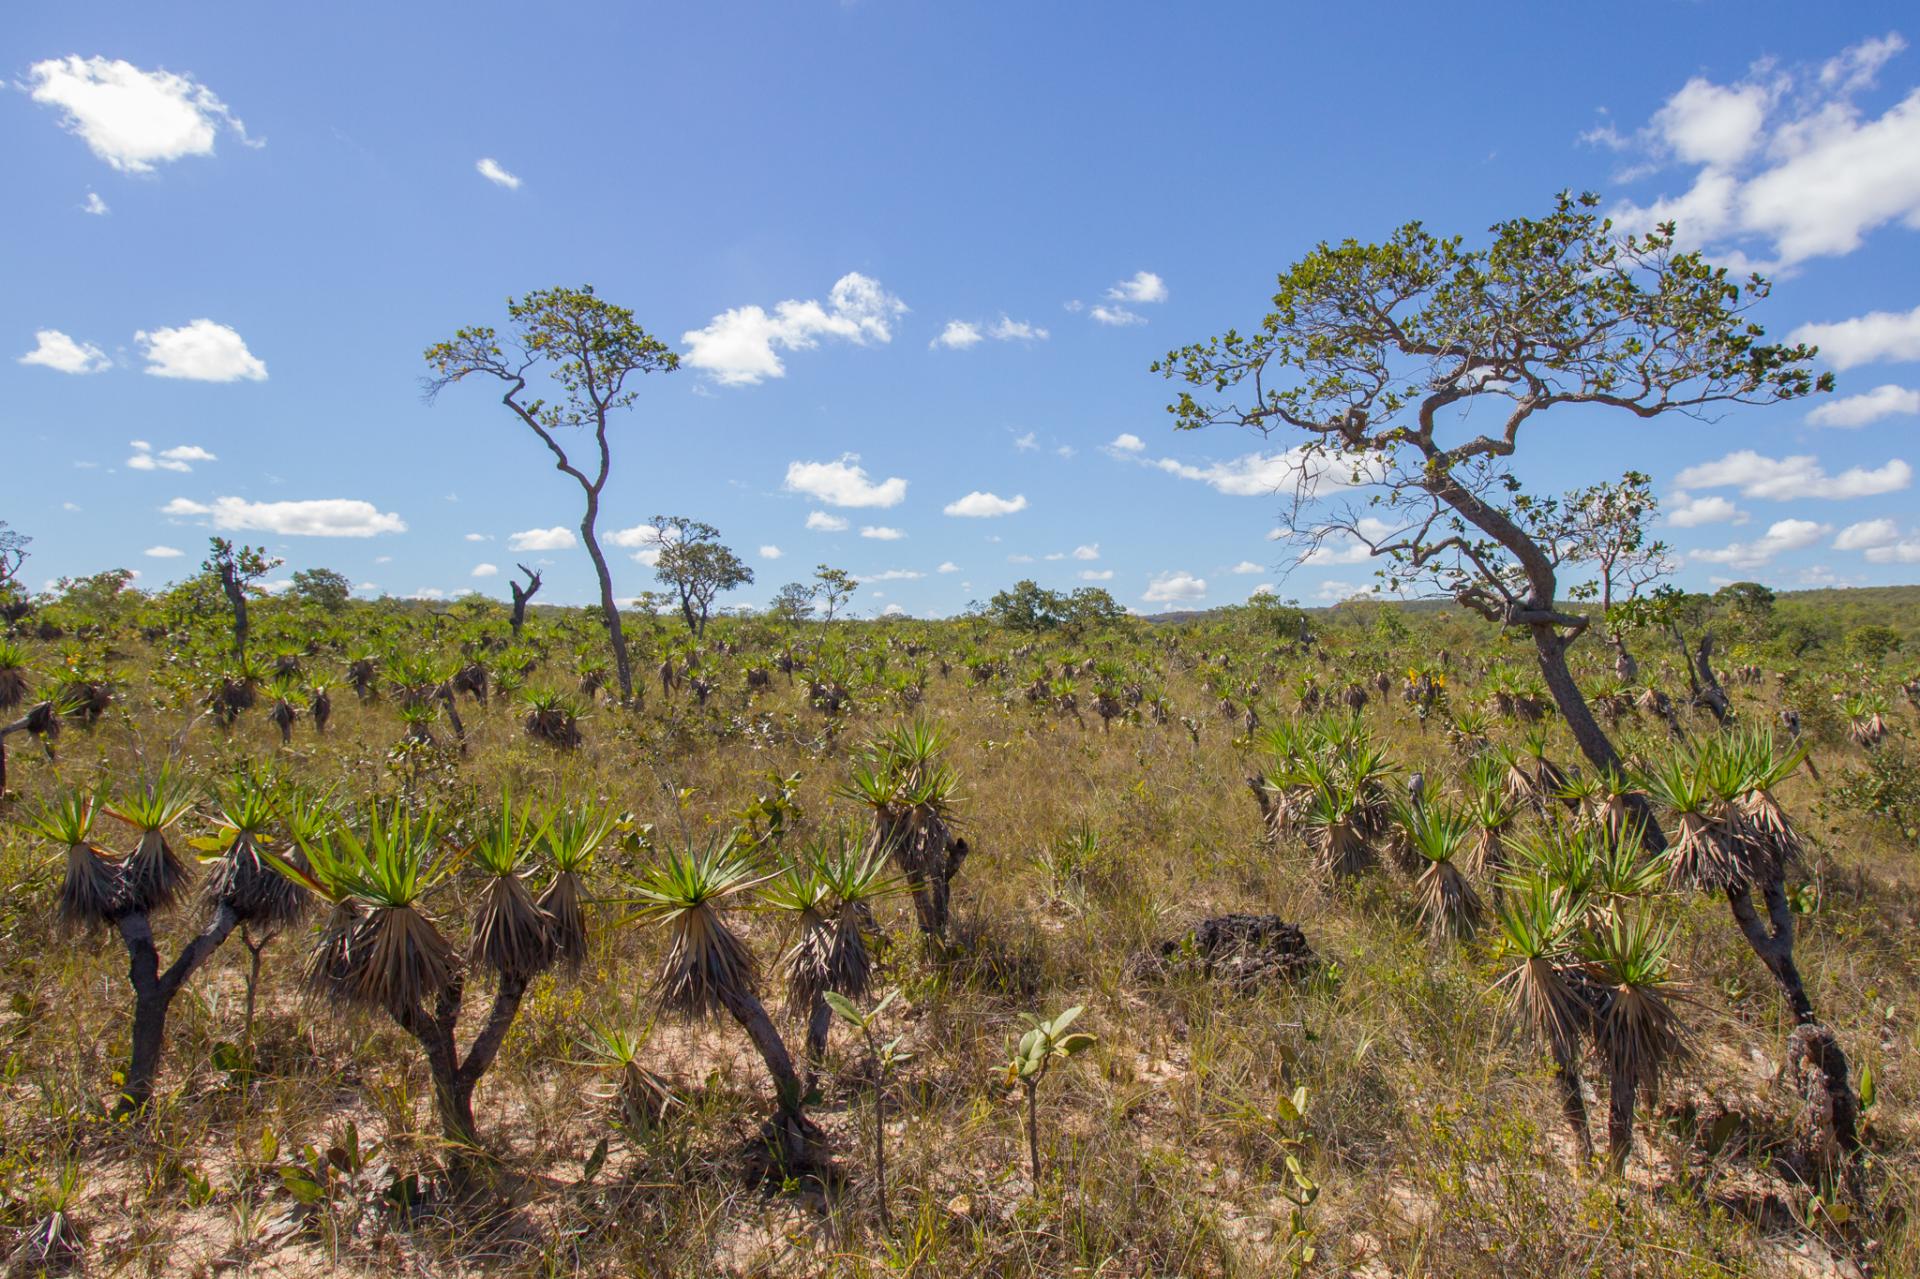 Typical Cerrado landscape